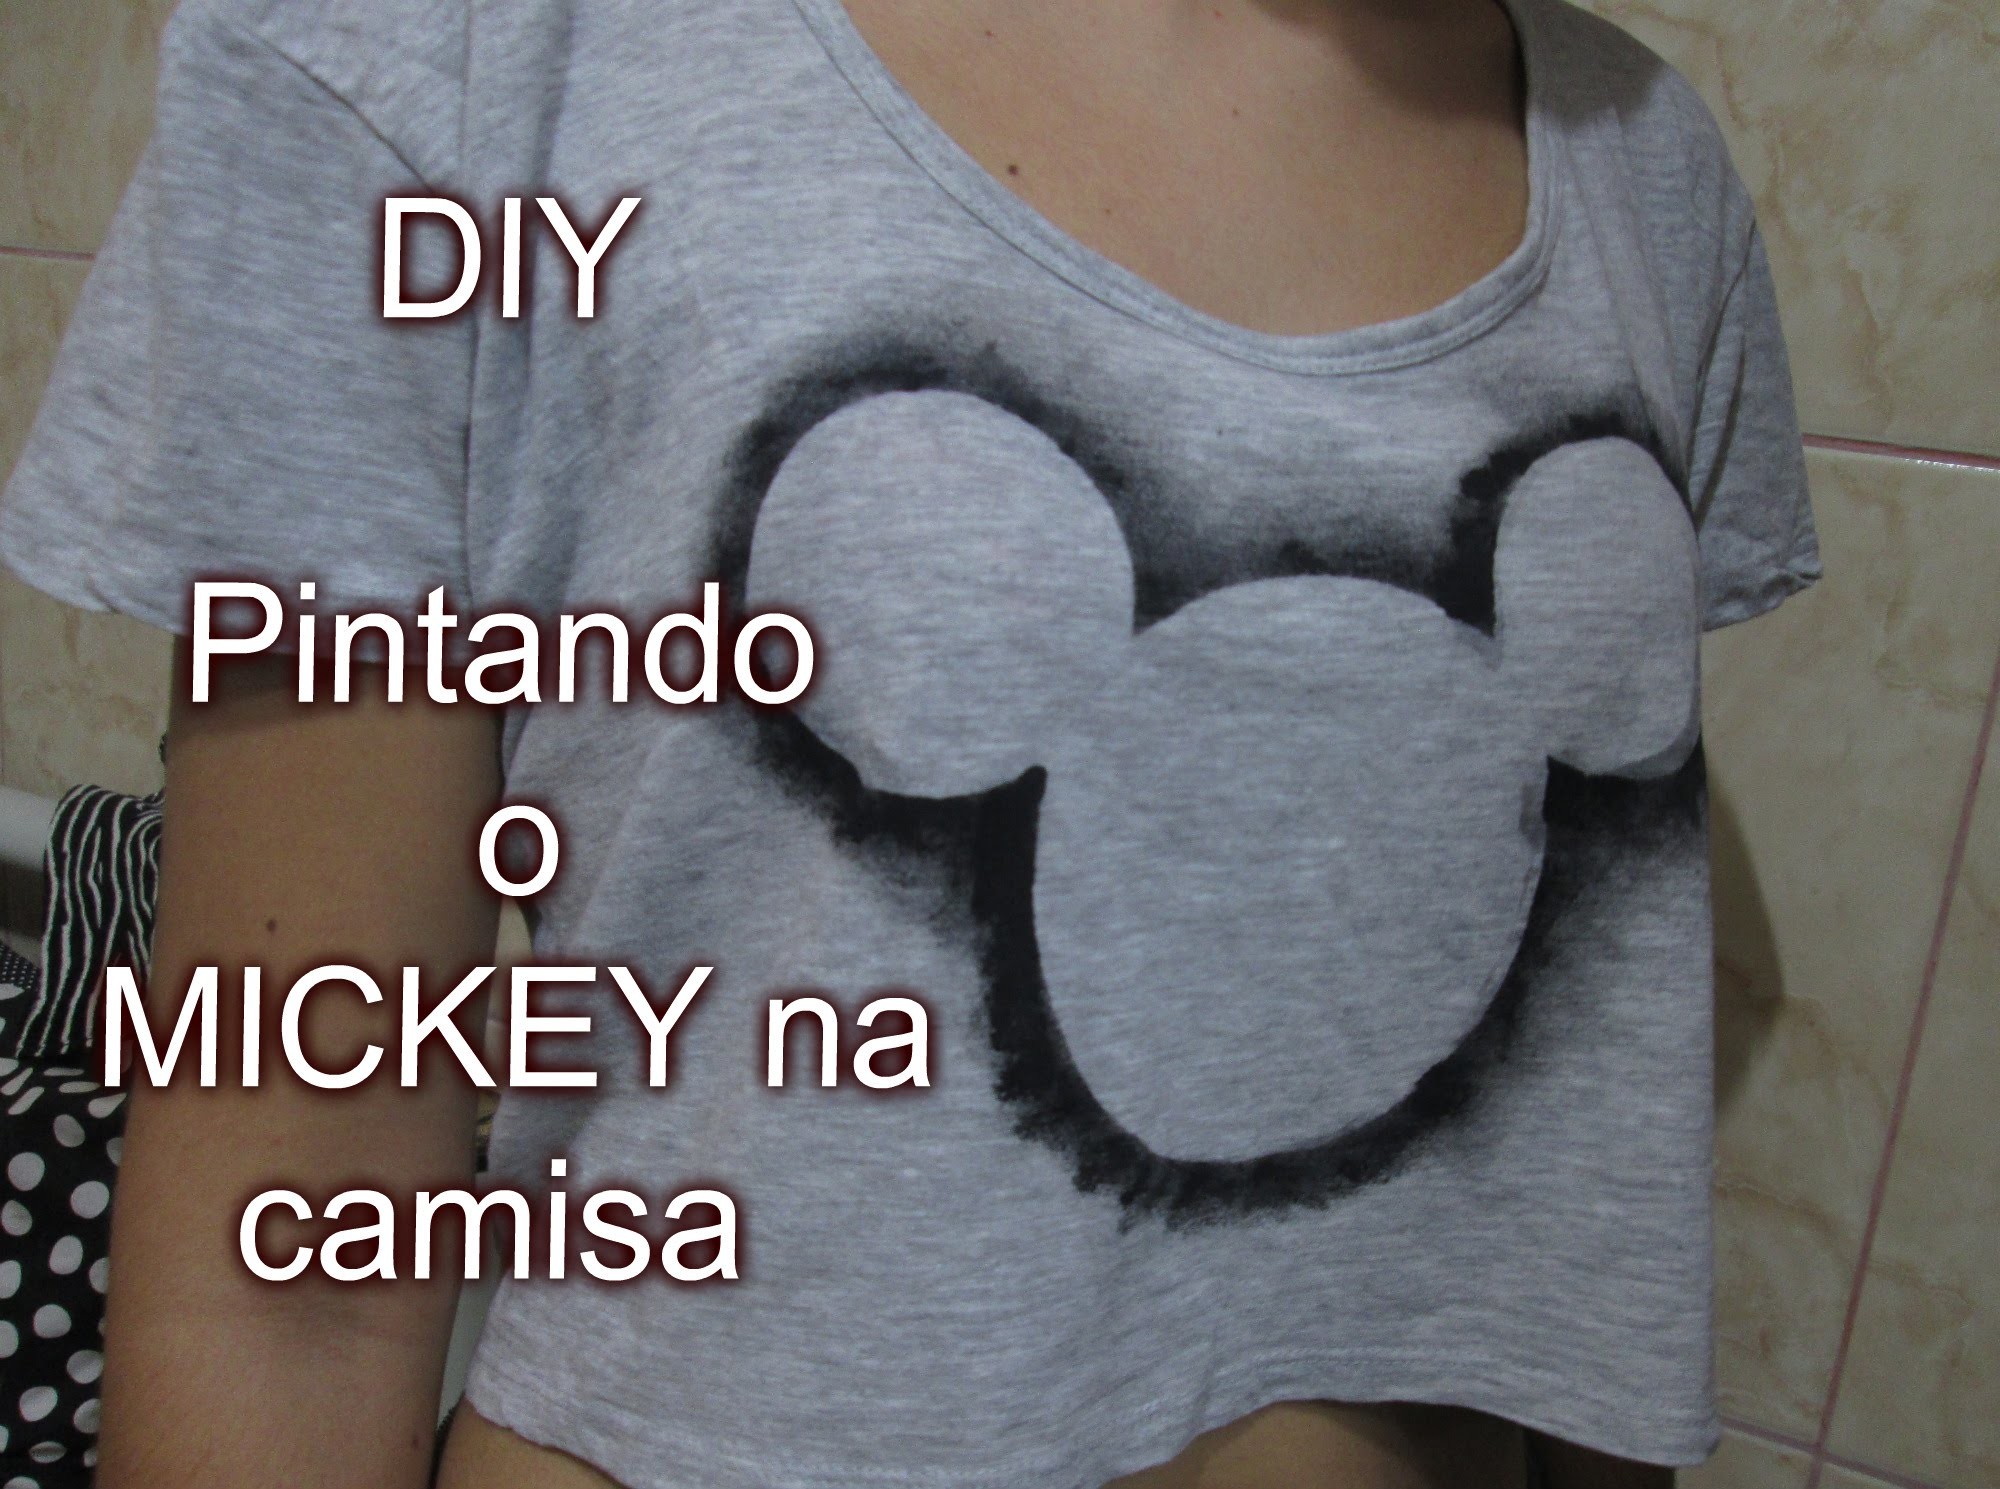 DIY - PINTANDO O MICKEY NA CAMISA - Faça você mesmo